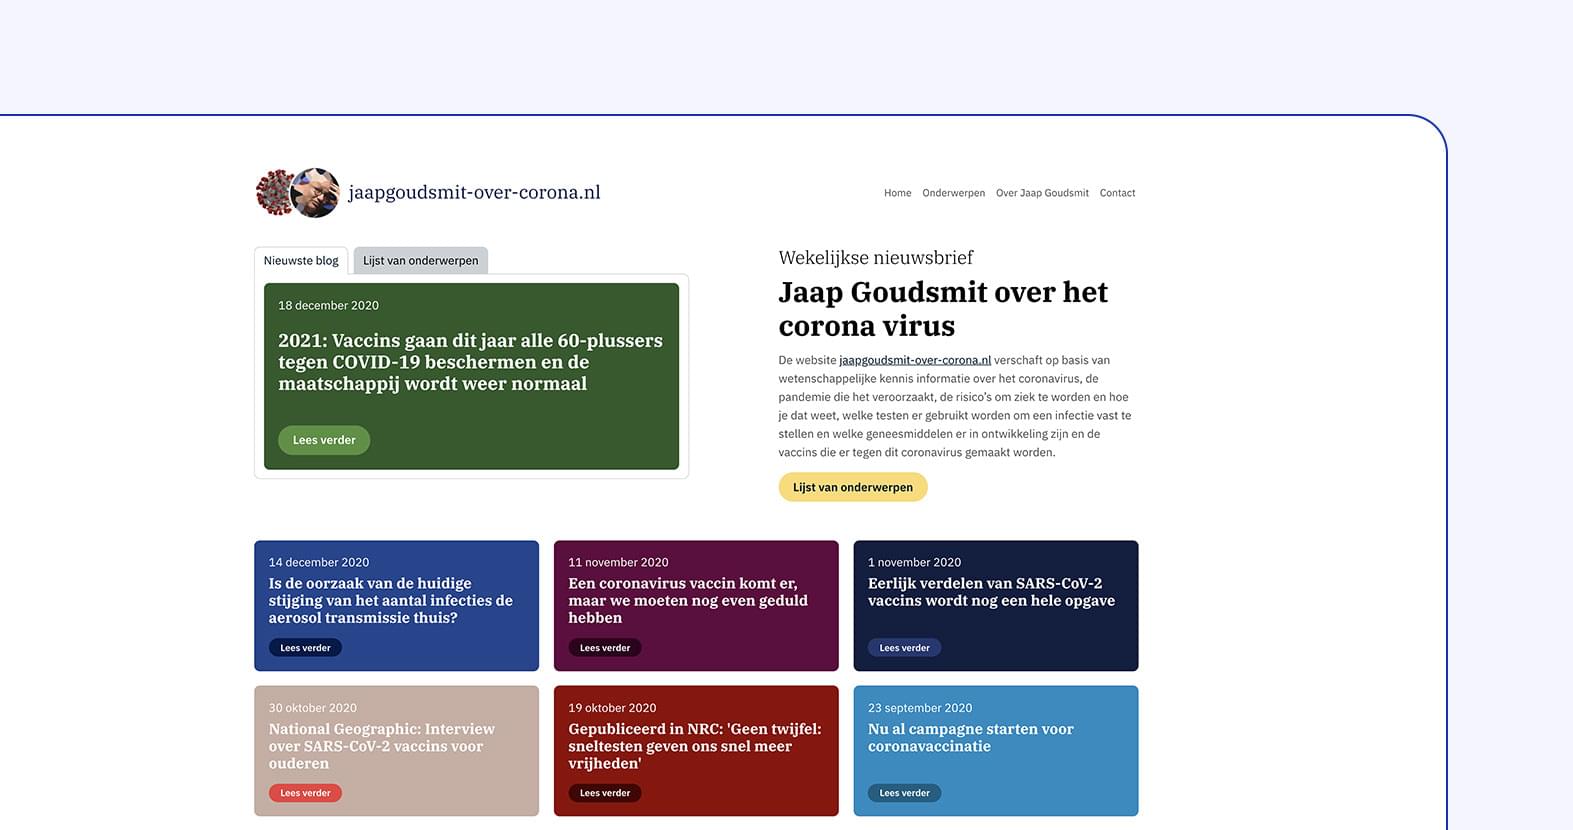 Jaap Goudsmit over Corona - De website jaapgoudsmit-over-corona.nl verschaft op basis van wetenschappelijke kennis informatie over het coronavirus, de pandemie die het veroorzaakt.